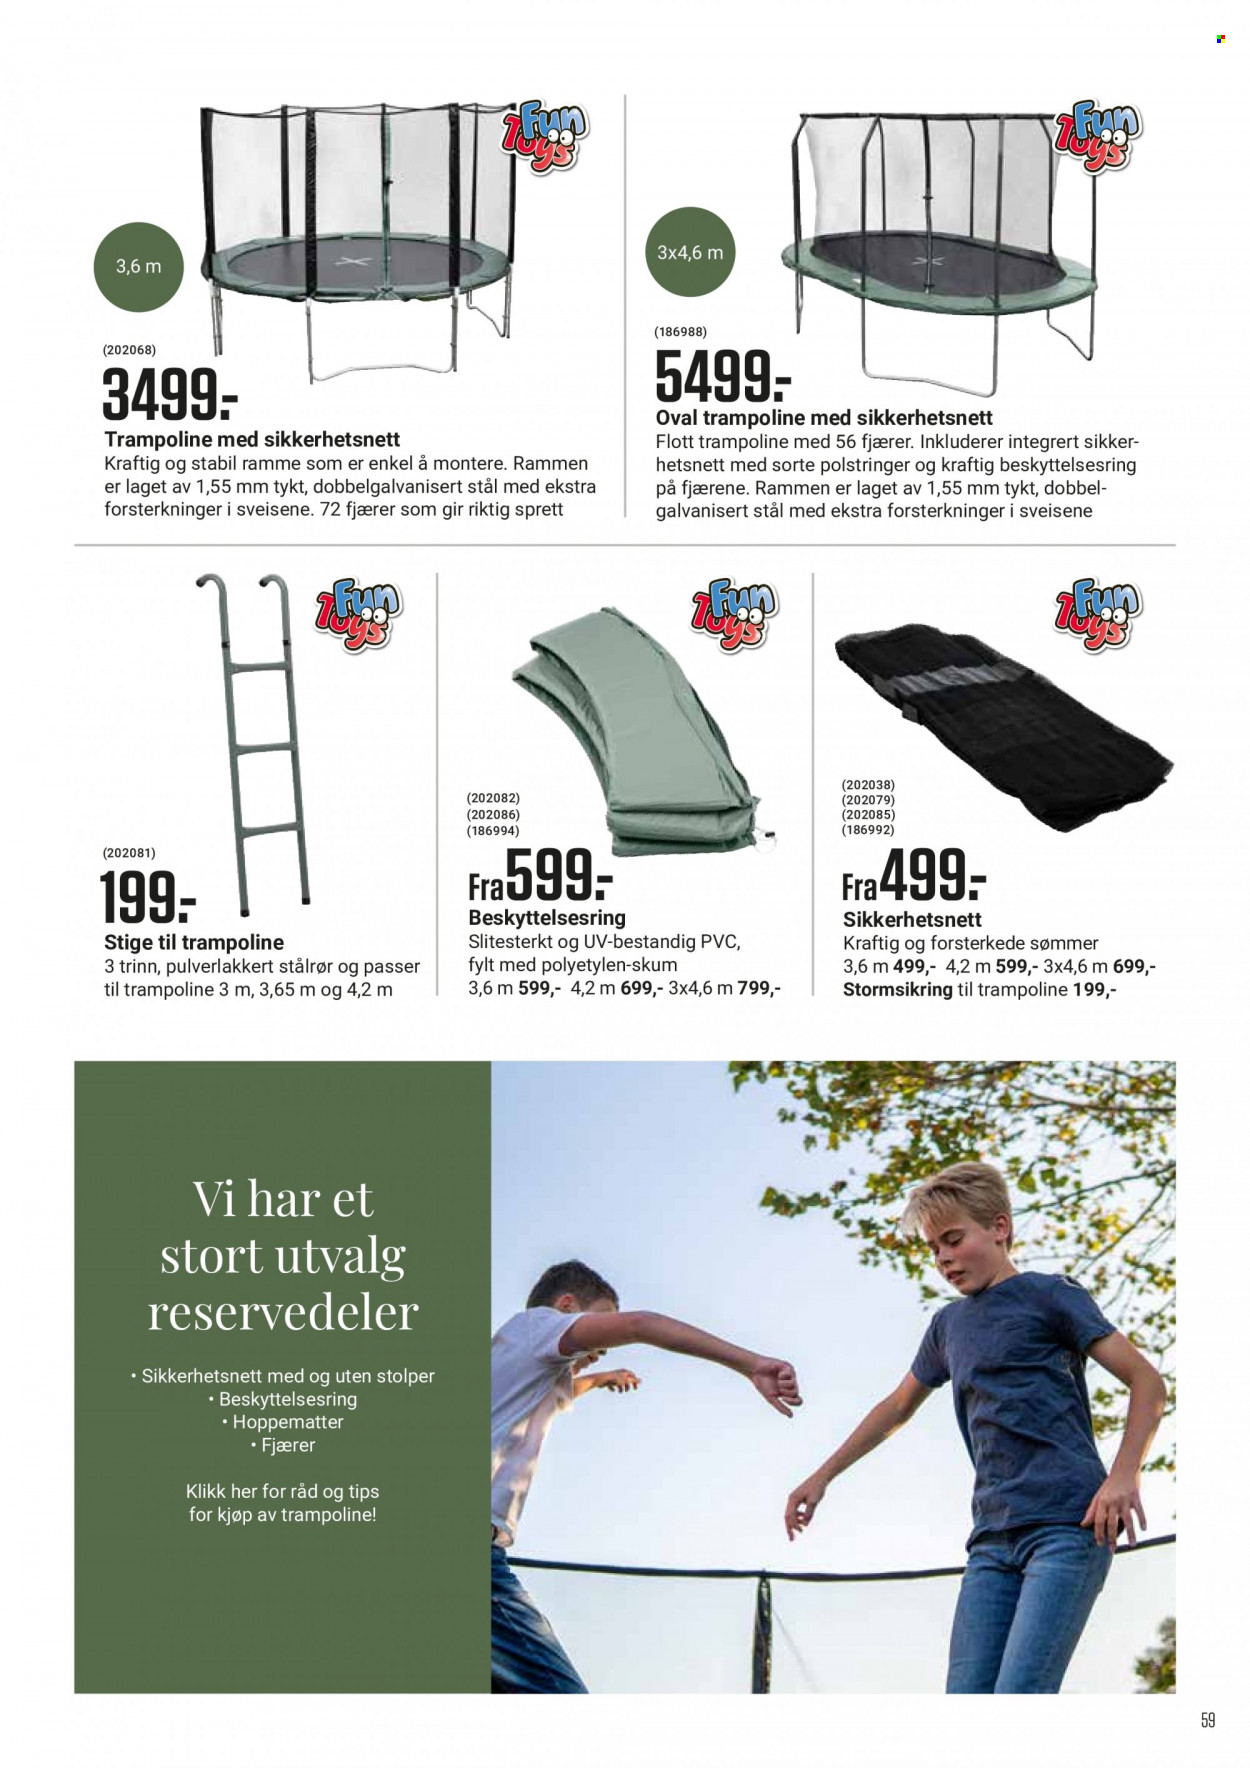 Kundeavis Europris - Produkter fra tilbudsaviser - trampoline. Side 59.